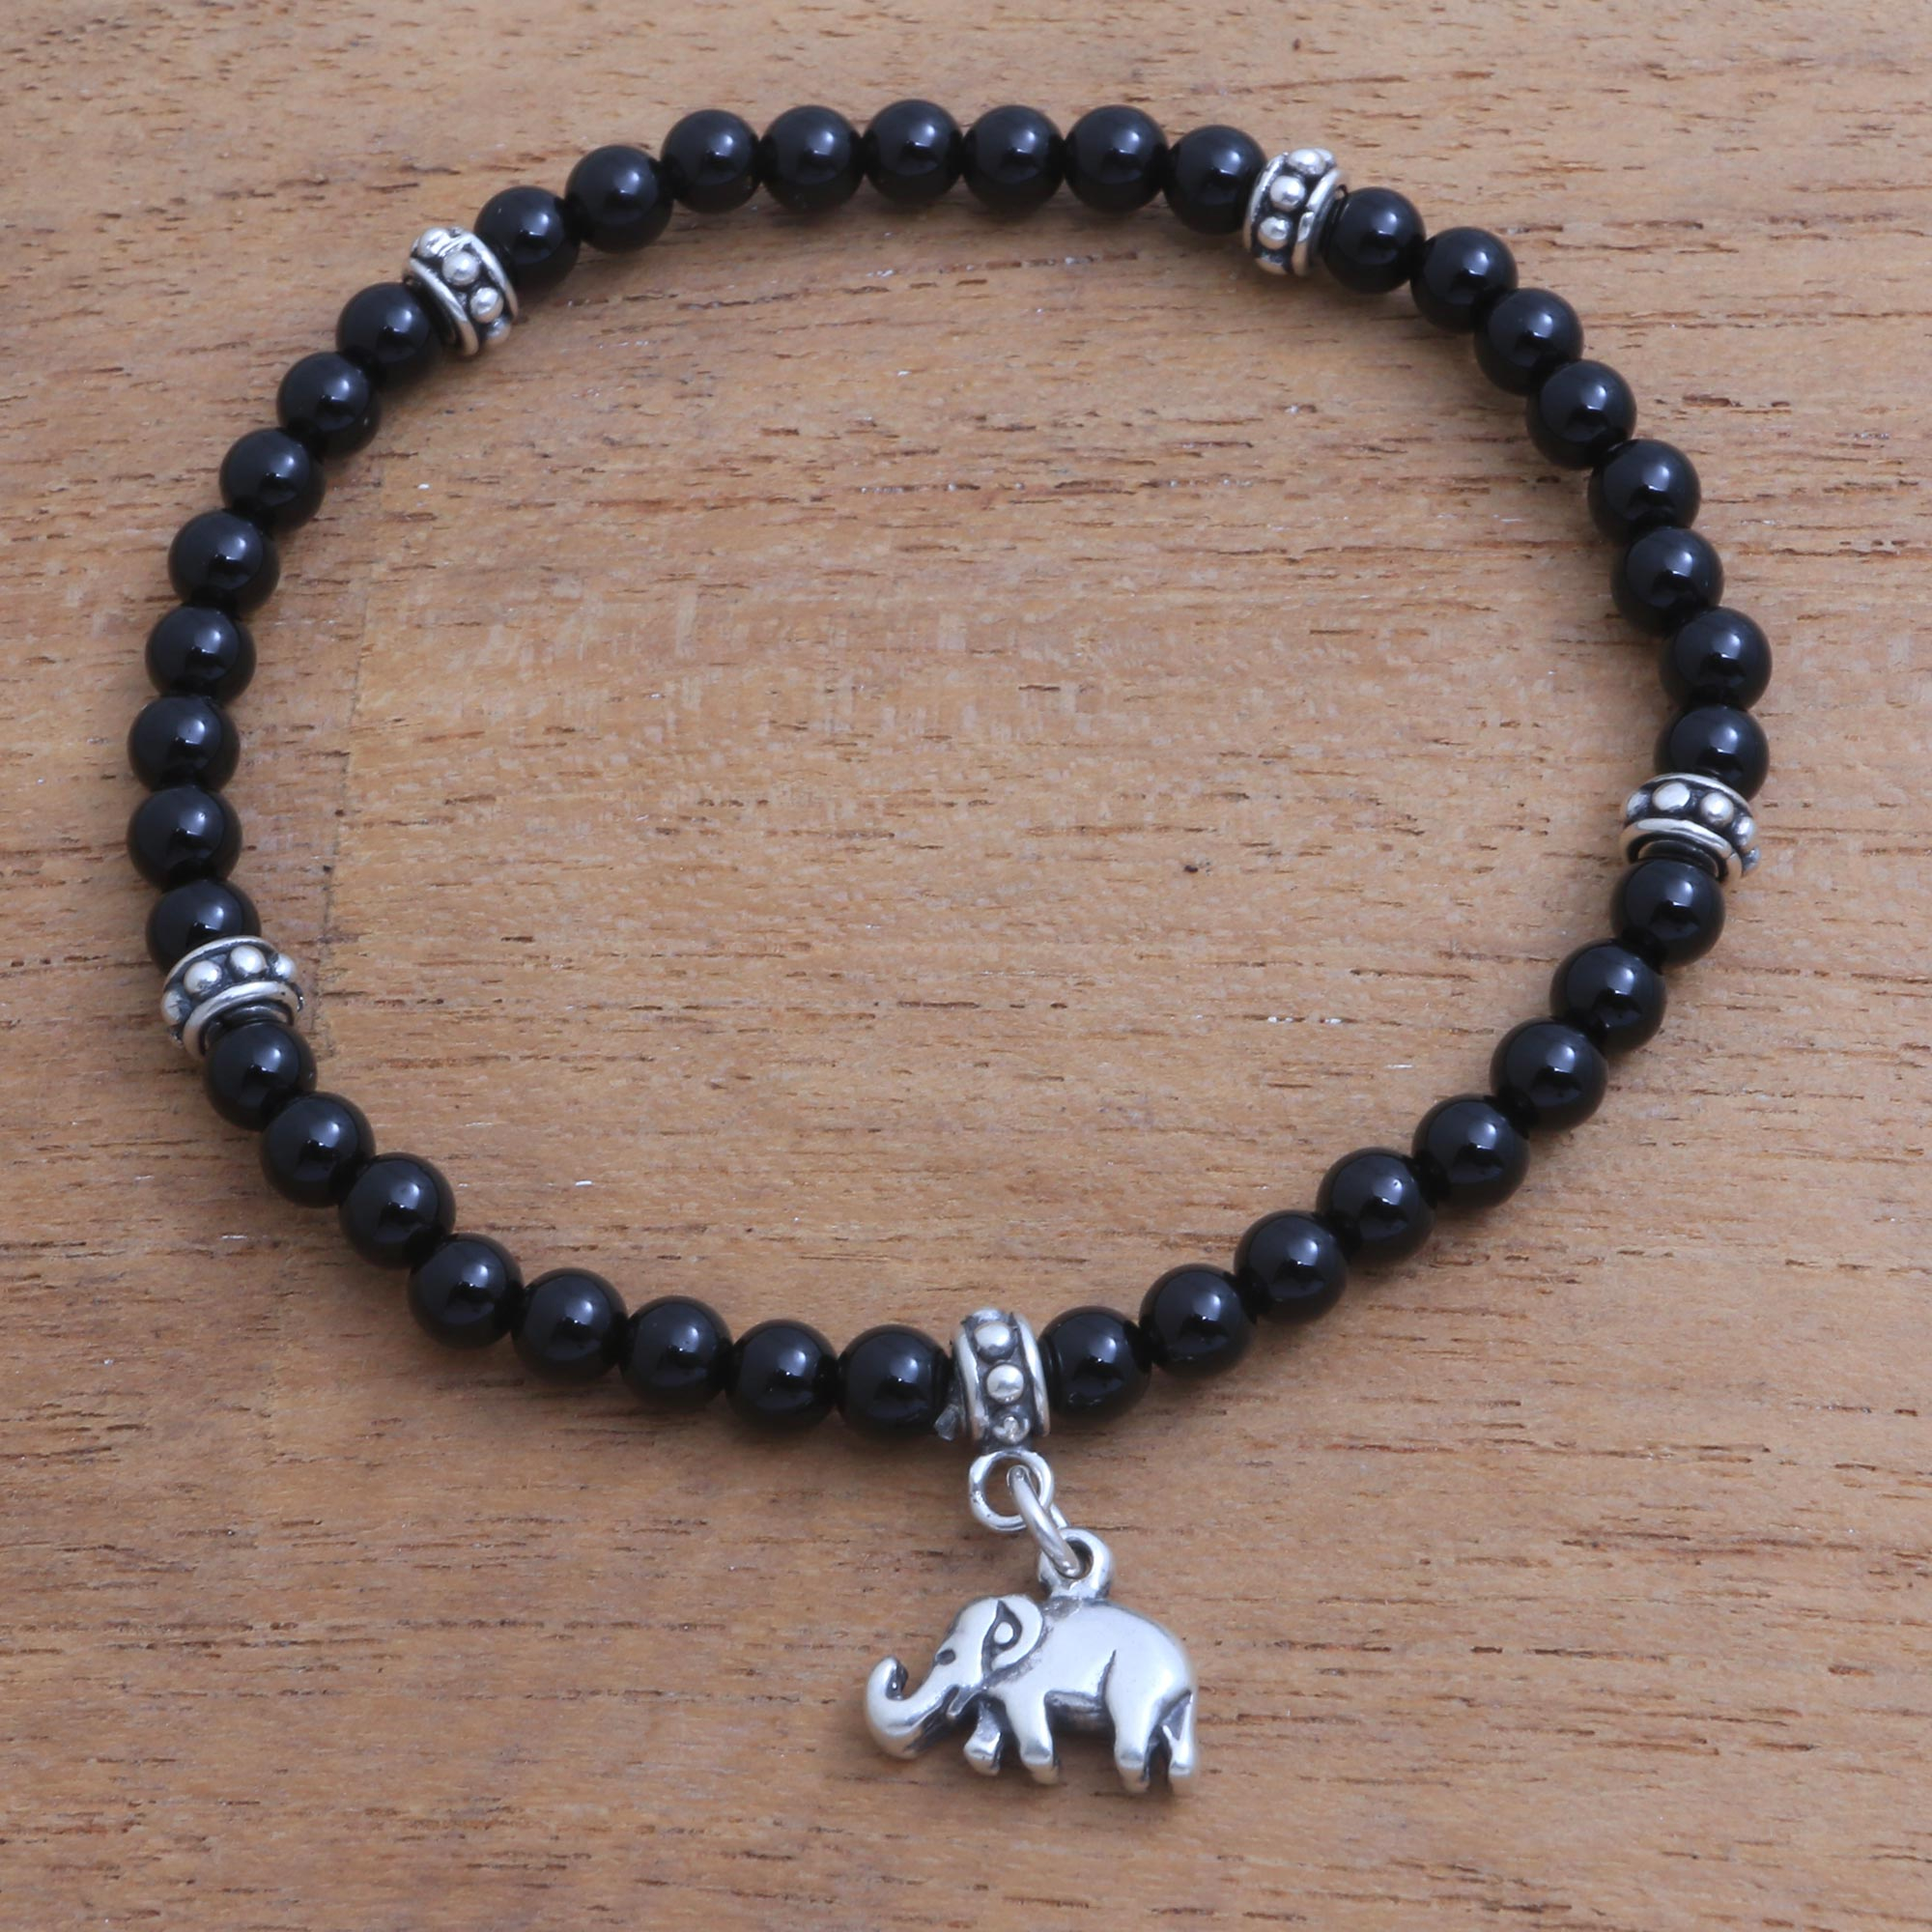 Stretch beaded bracelet with elephant